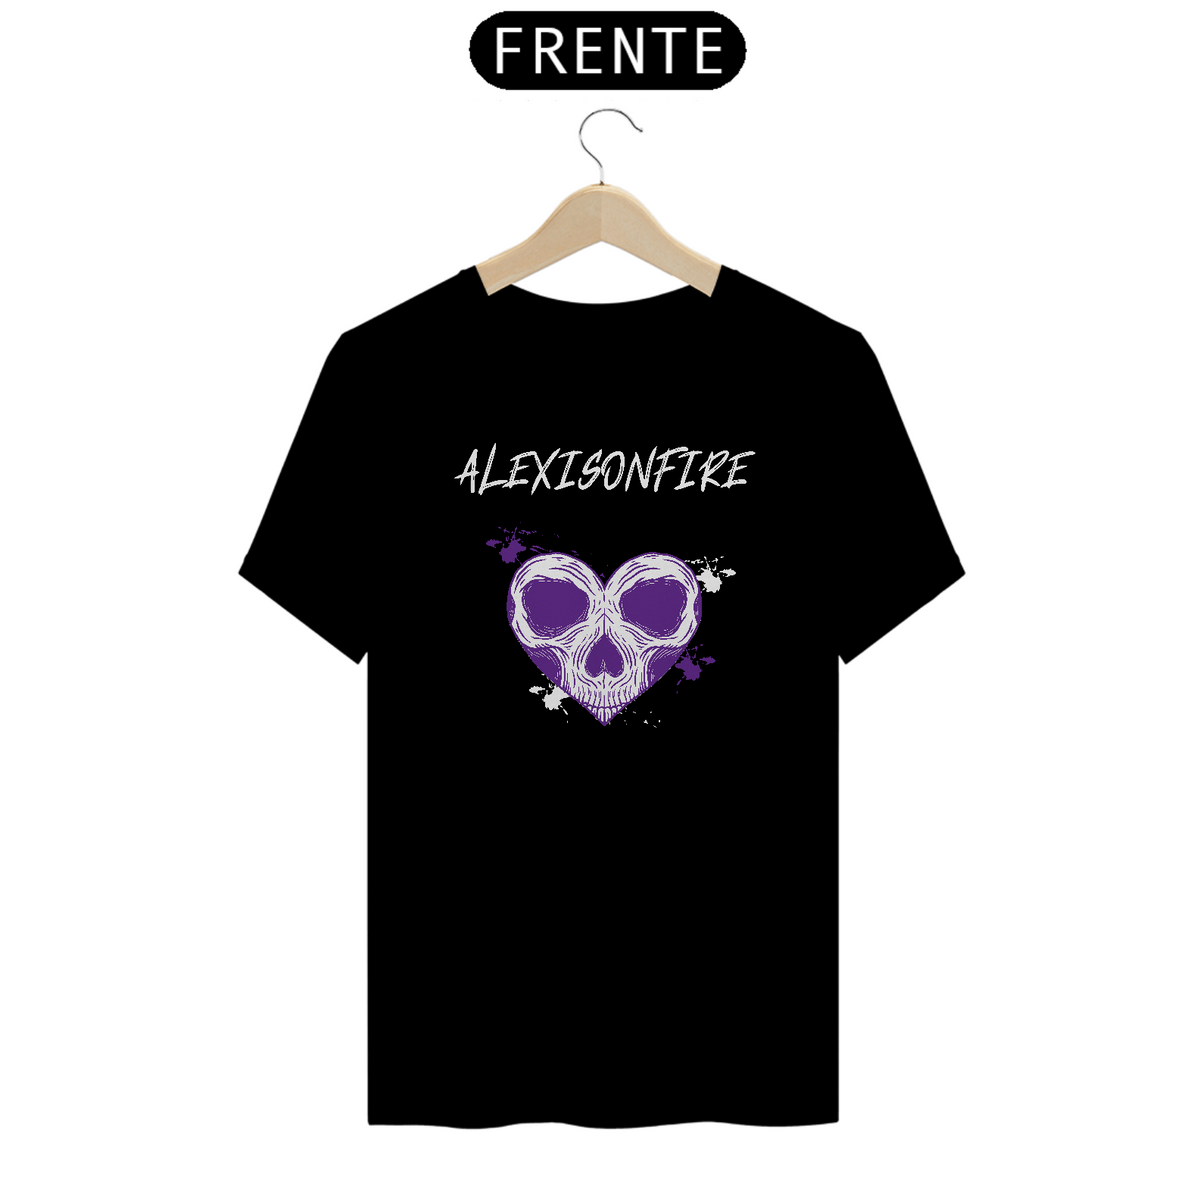 Nome do produto: Camiseta Alexisonfire Heart